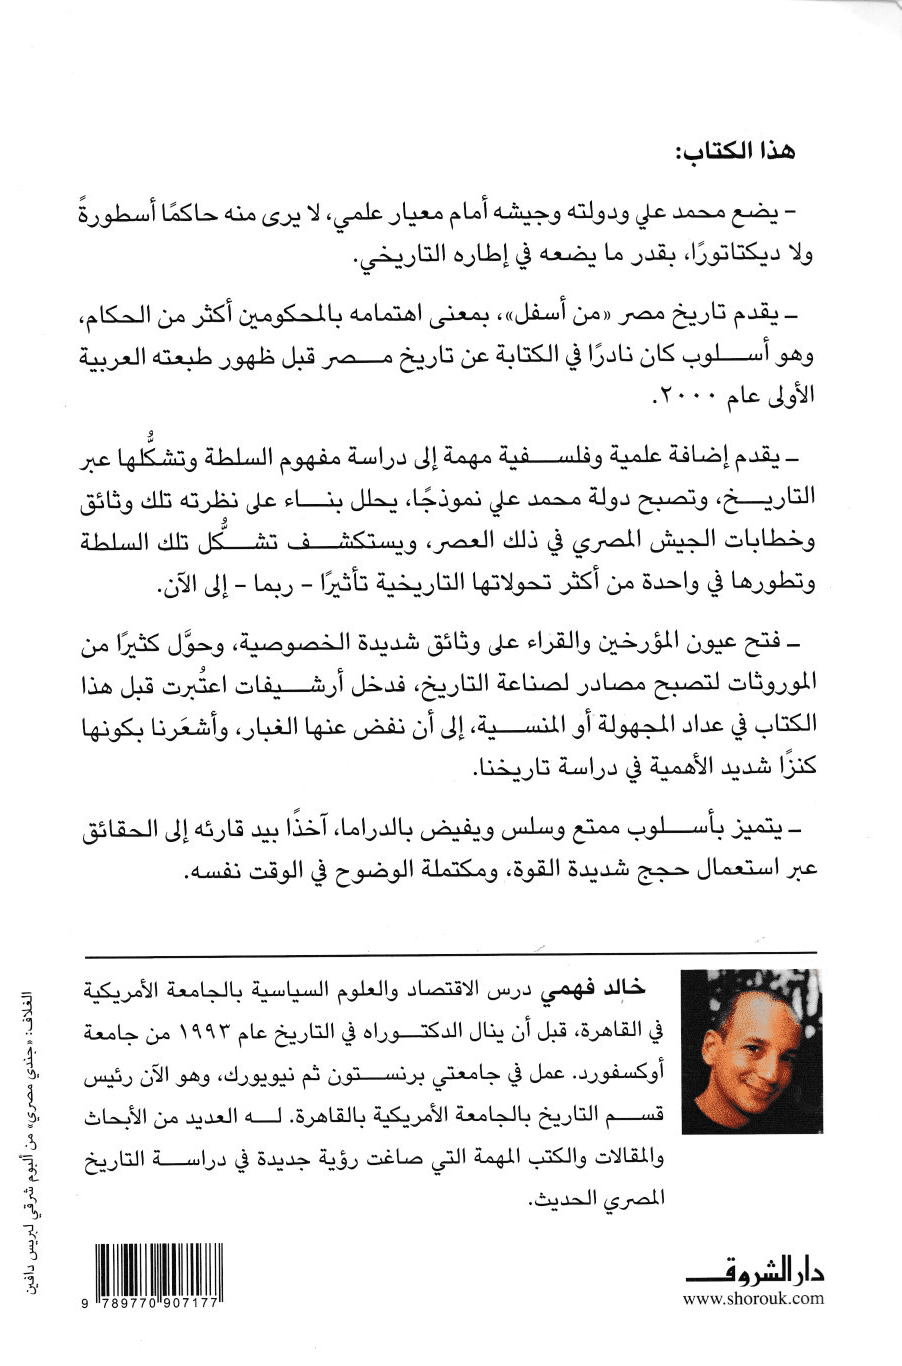 كل رجال الباشا: محمد علي وجيشه وبناء مصر الحديثة - تأليف: خالد فهمي